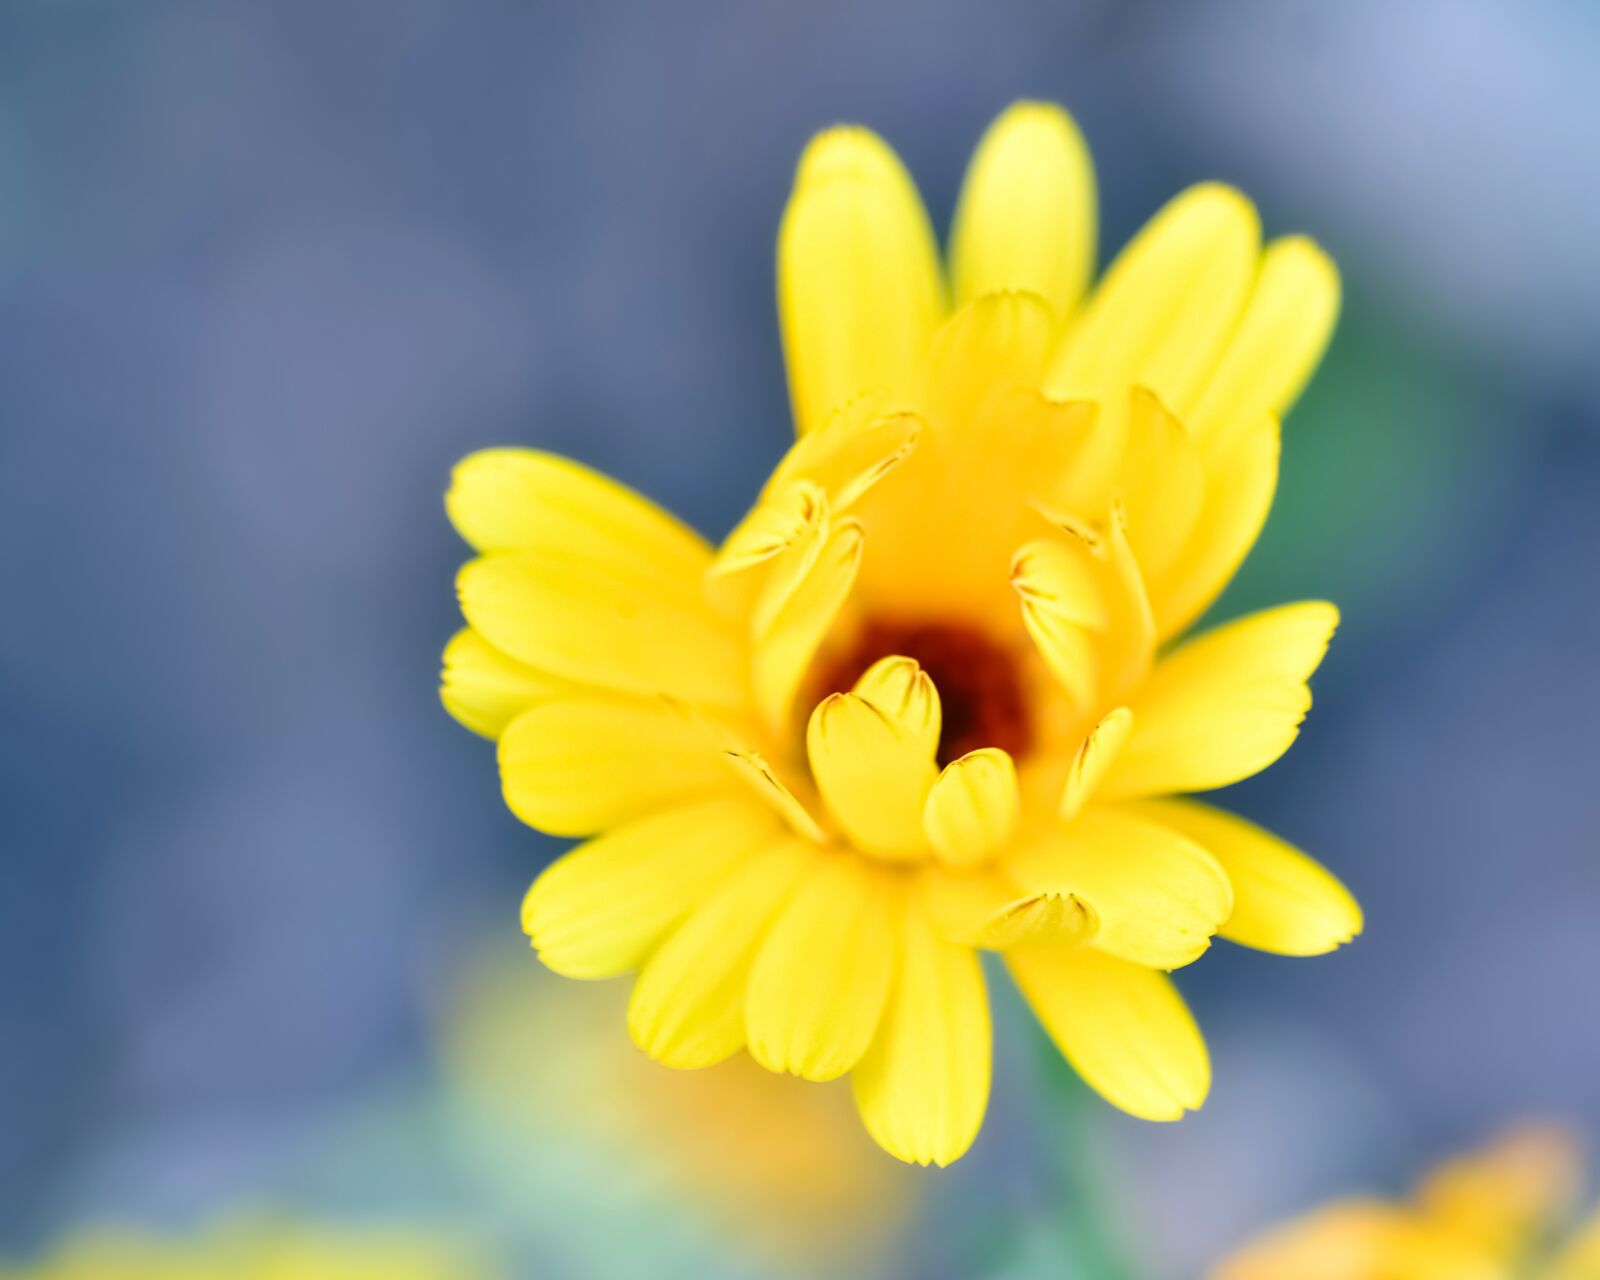 Nikon D500 + Tokina AT-X Pro 100mm F2.8 Macro sample photo. Flower, yellow, petal photography